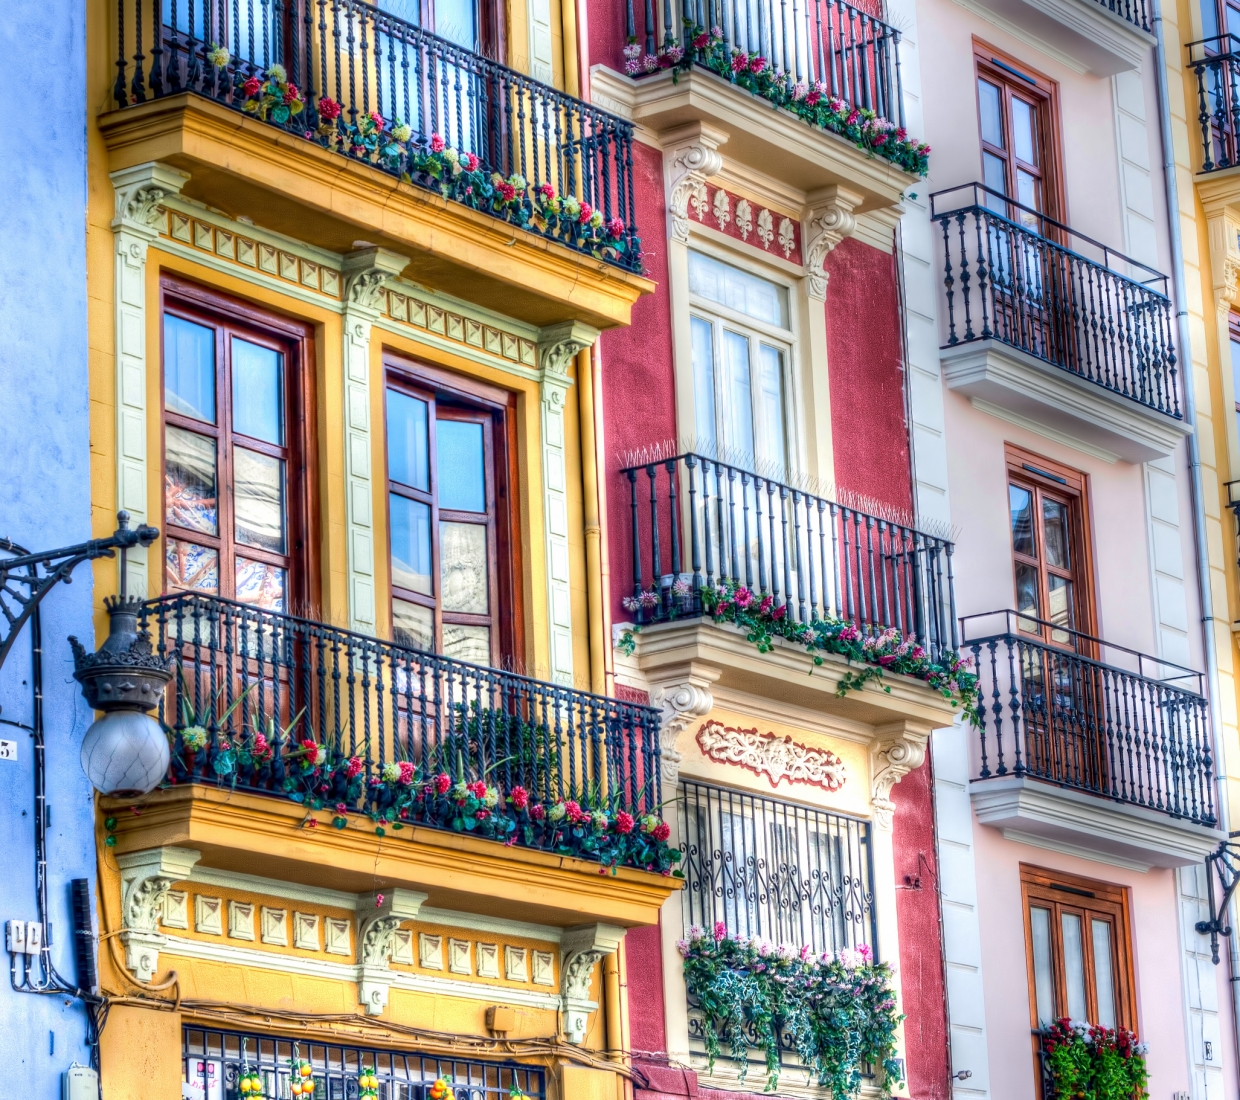 Hotéis boutique, hotéis de charme e turismo rural Madrid